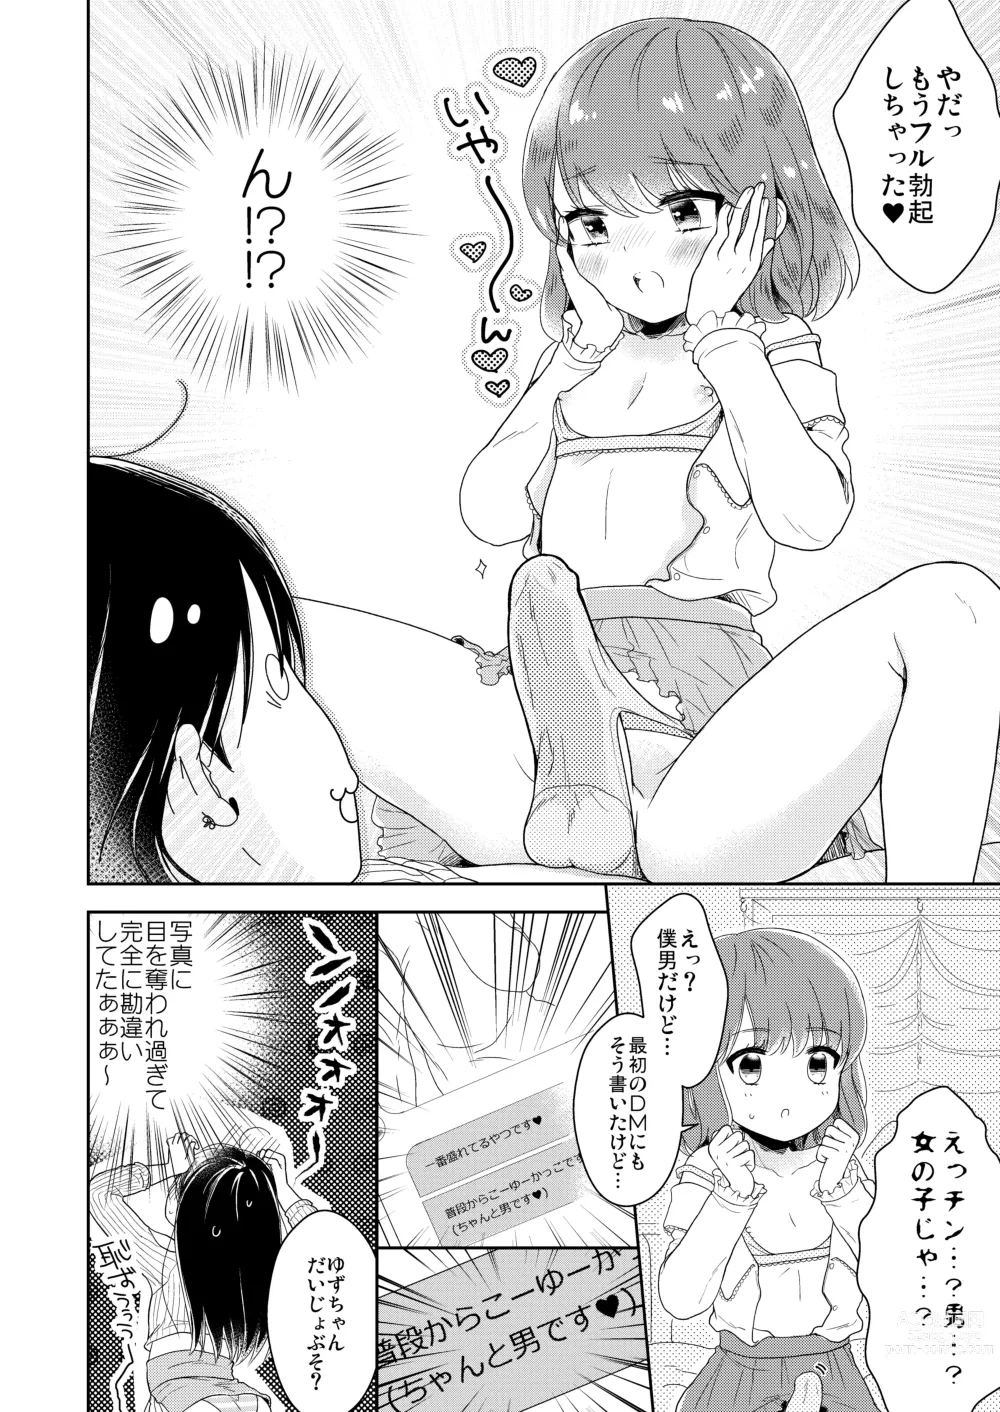 Page 13 of doujinshi Otokonoko x Otokonoko = Saikou